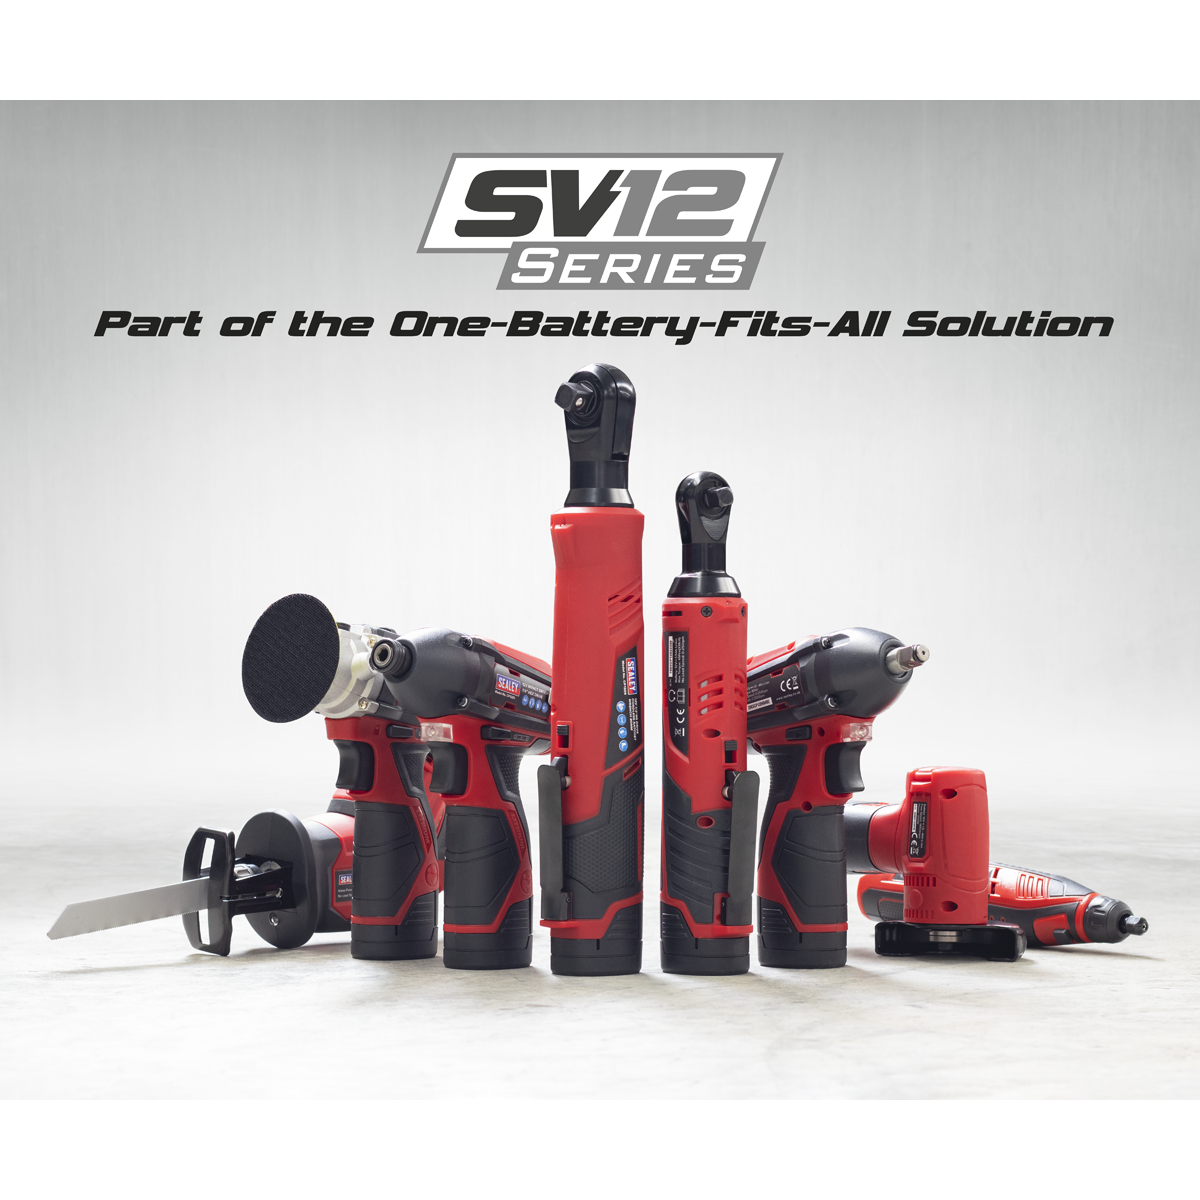 Cordless Reciprocating Saw 12V SV12 Series - 2 Batteries - CP1208KIT - Farming Parts